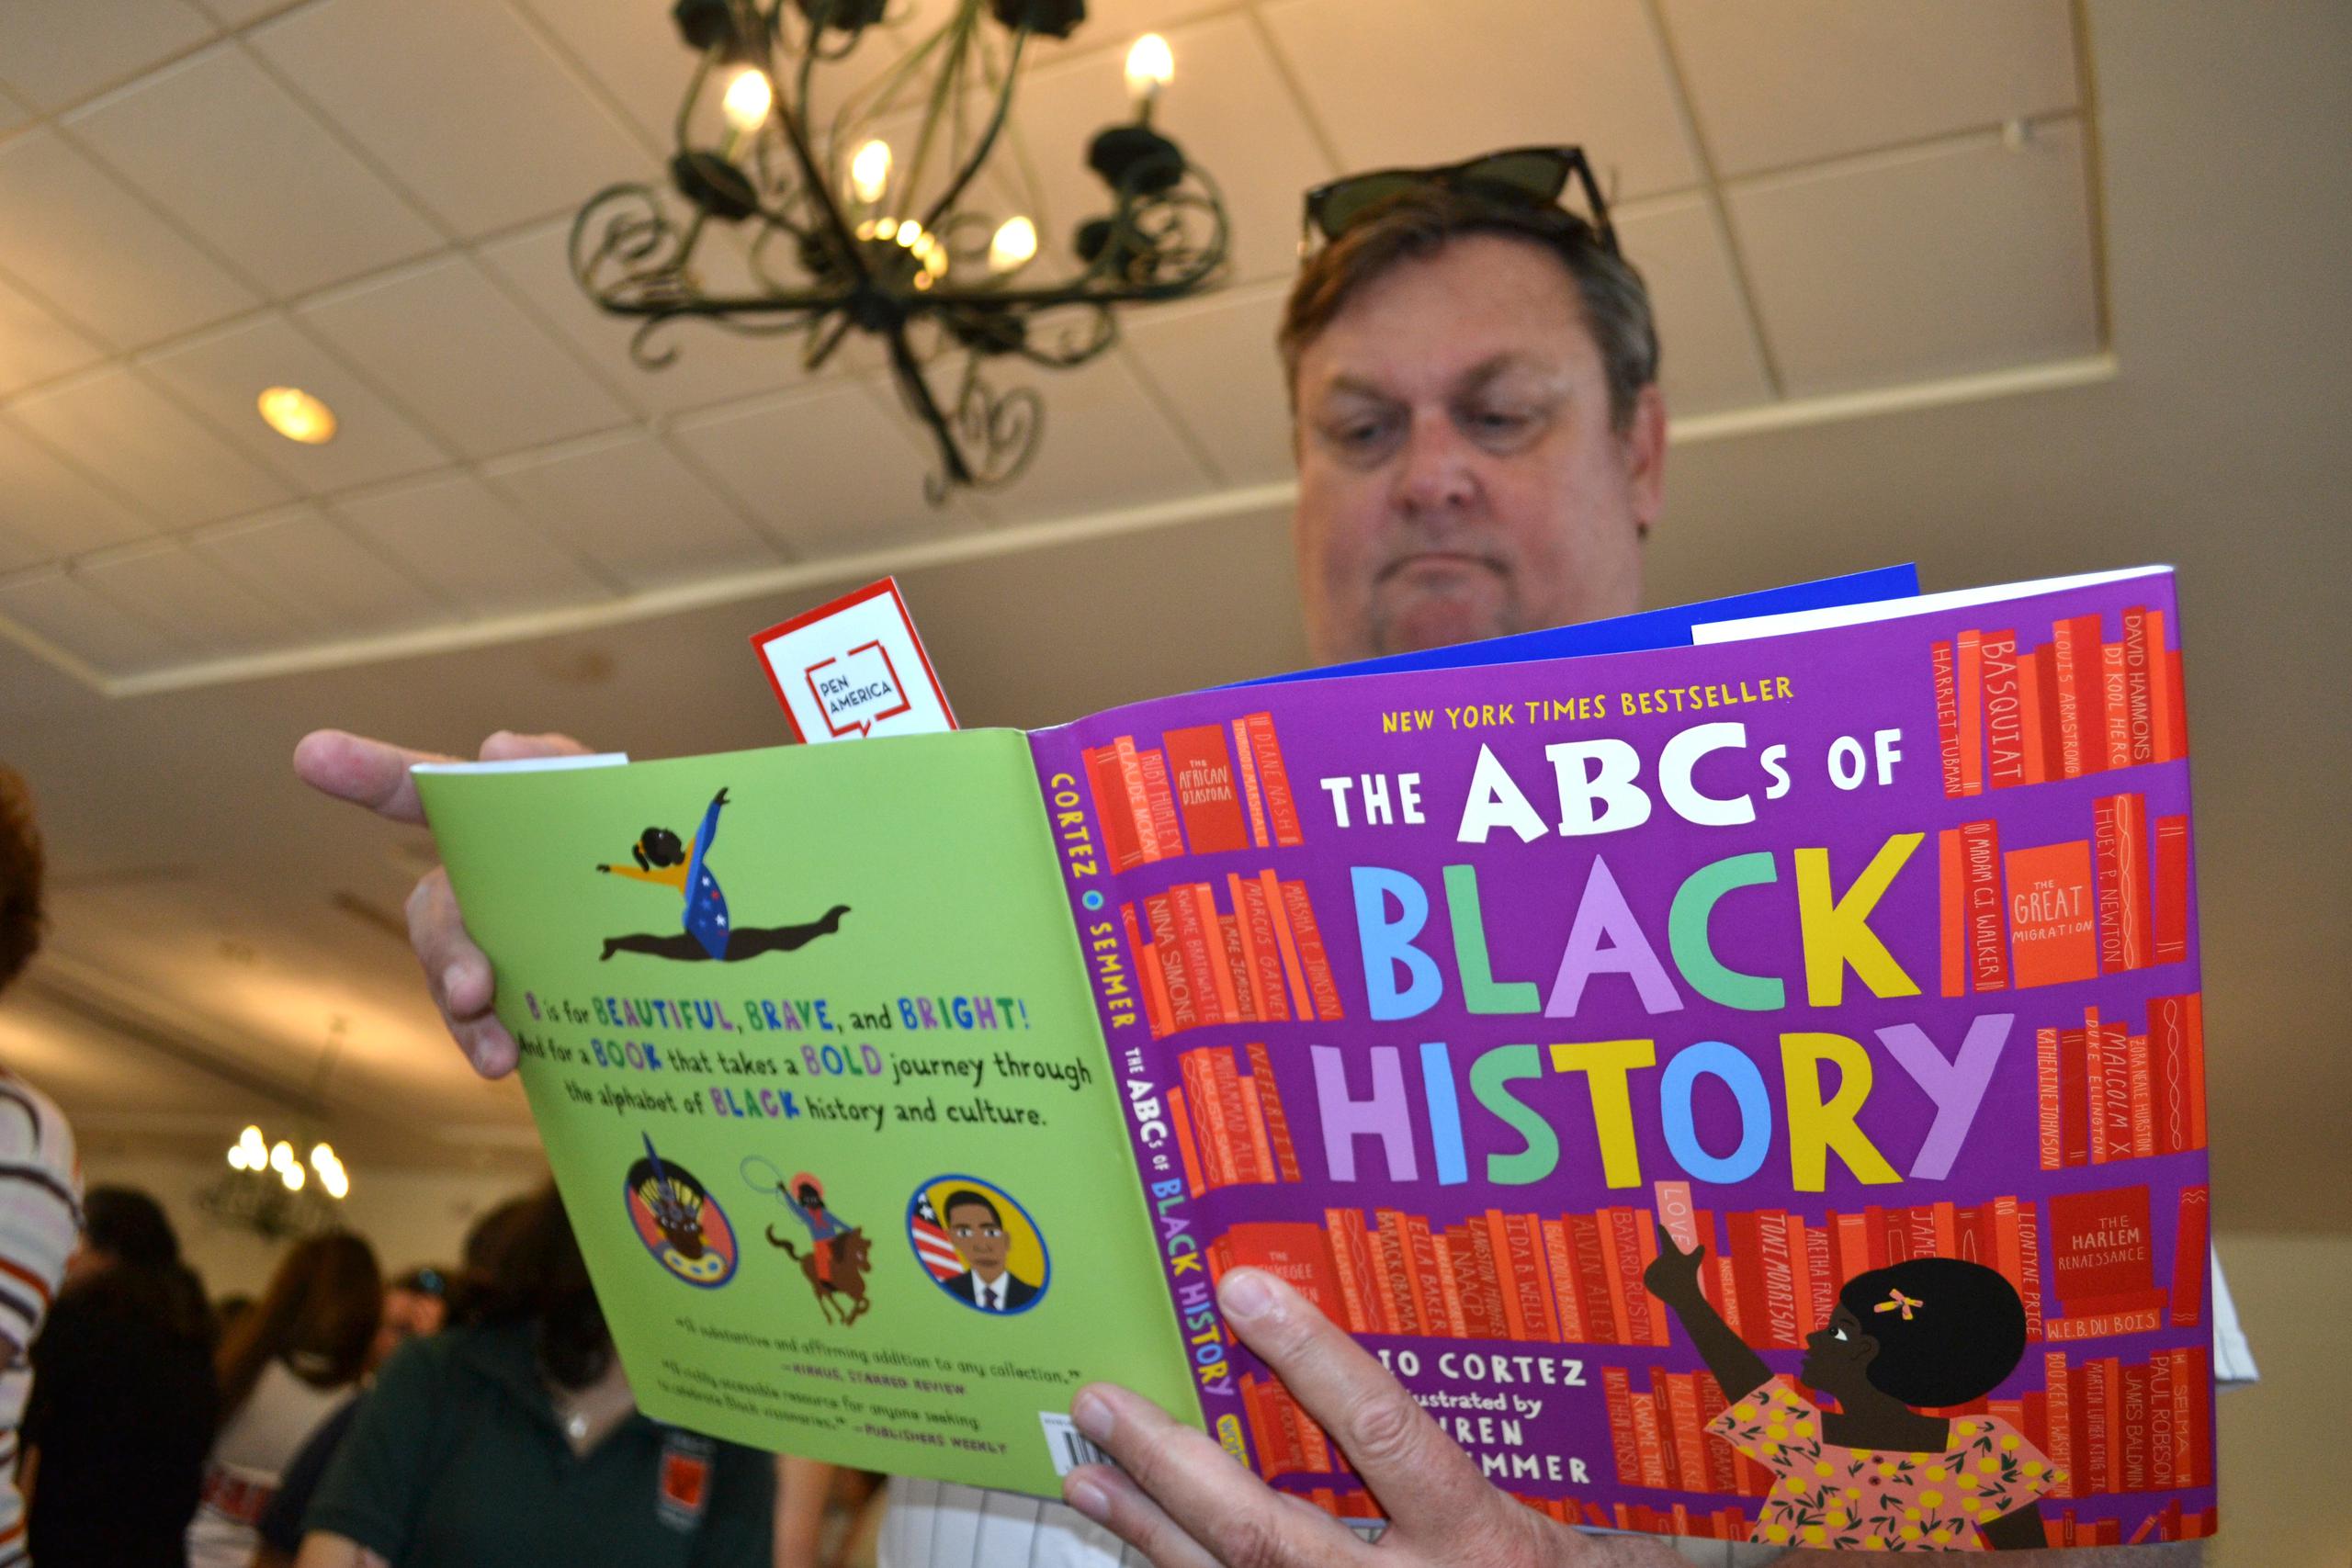 Un hombre hojea un ejemplar del "The ABC's of Black History", de Rio Cortez y Lauren Semmer, en Miami, Florida (EE. UU). Fotografía de archivo. EFE/Antoni Belchi
